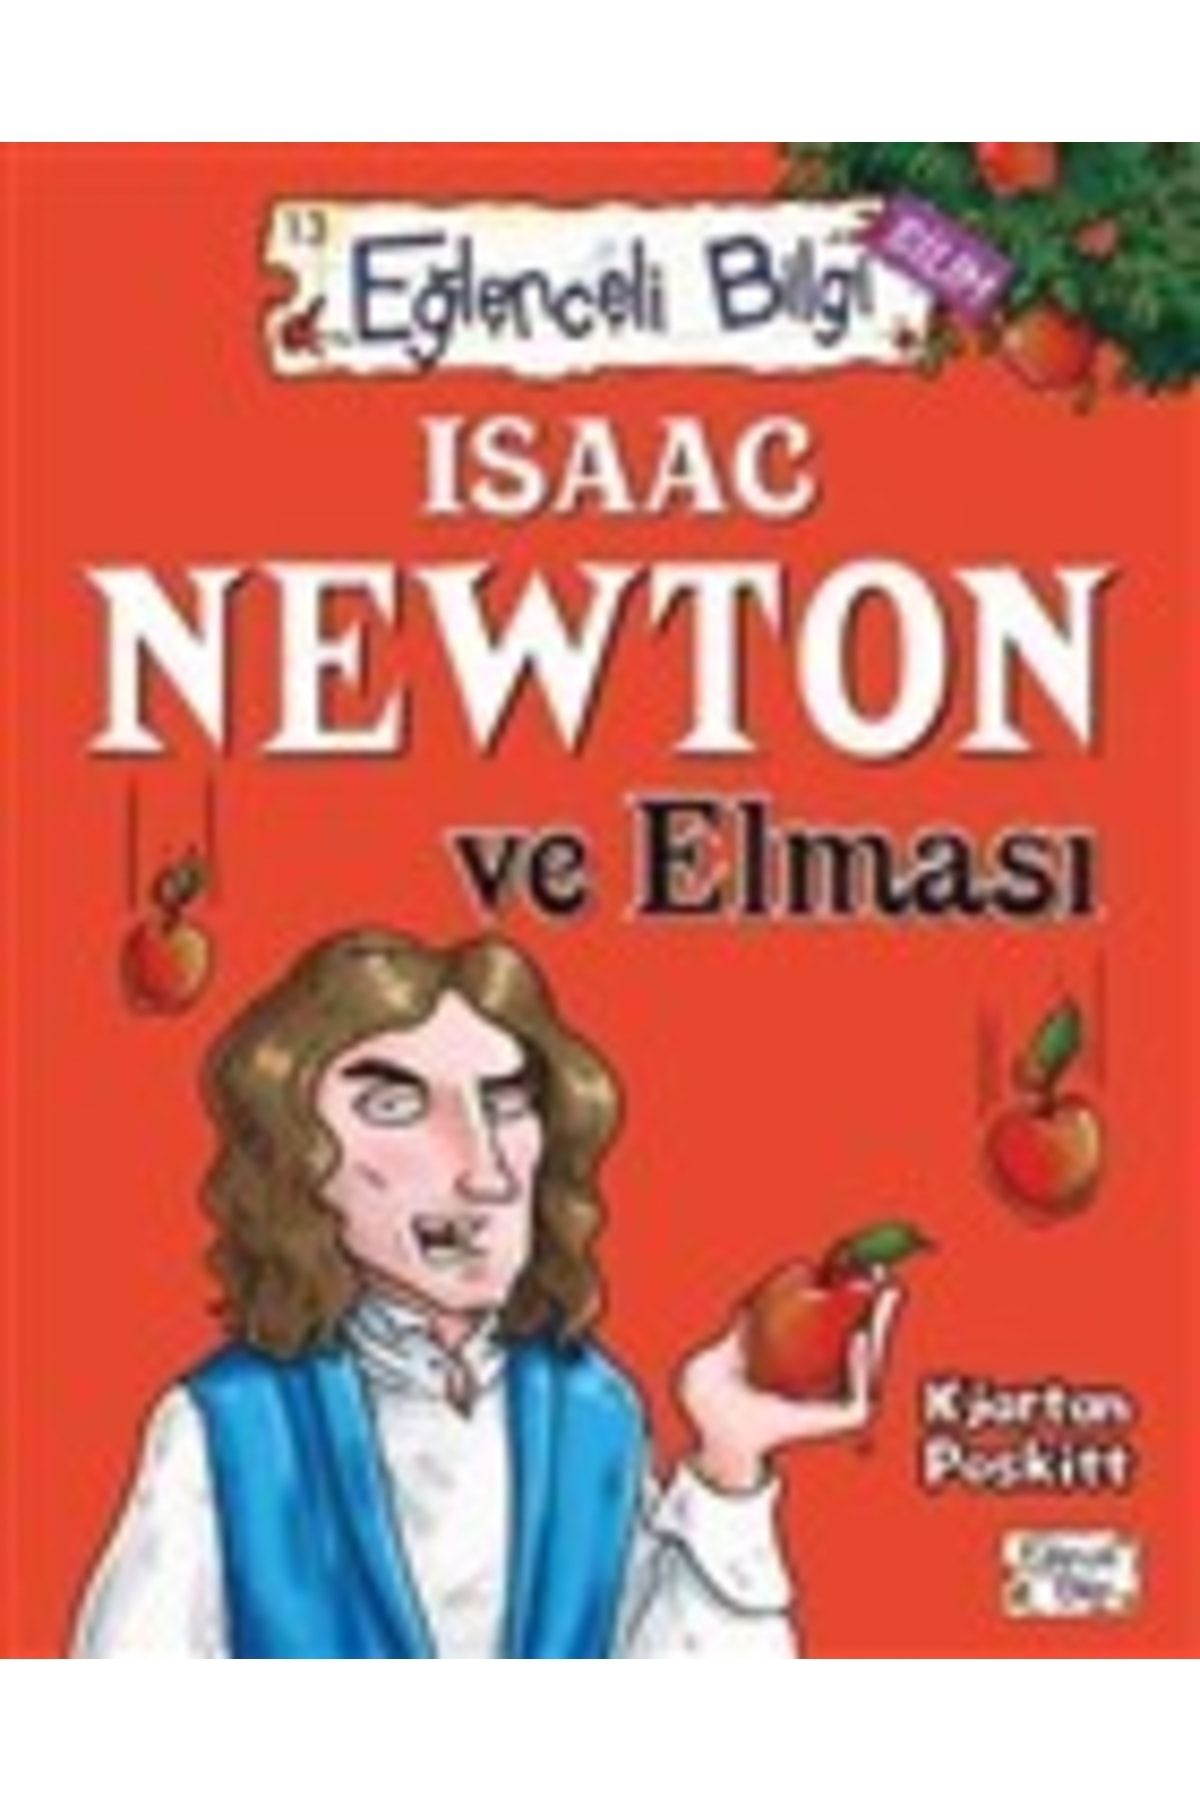 Timaş Yayınları Eğlenceli Bilgi Isaac Newton Ve Elması